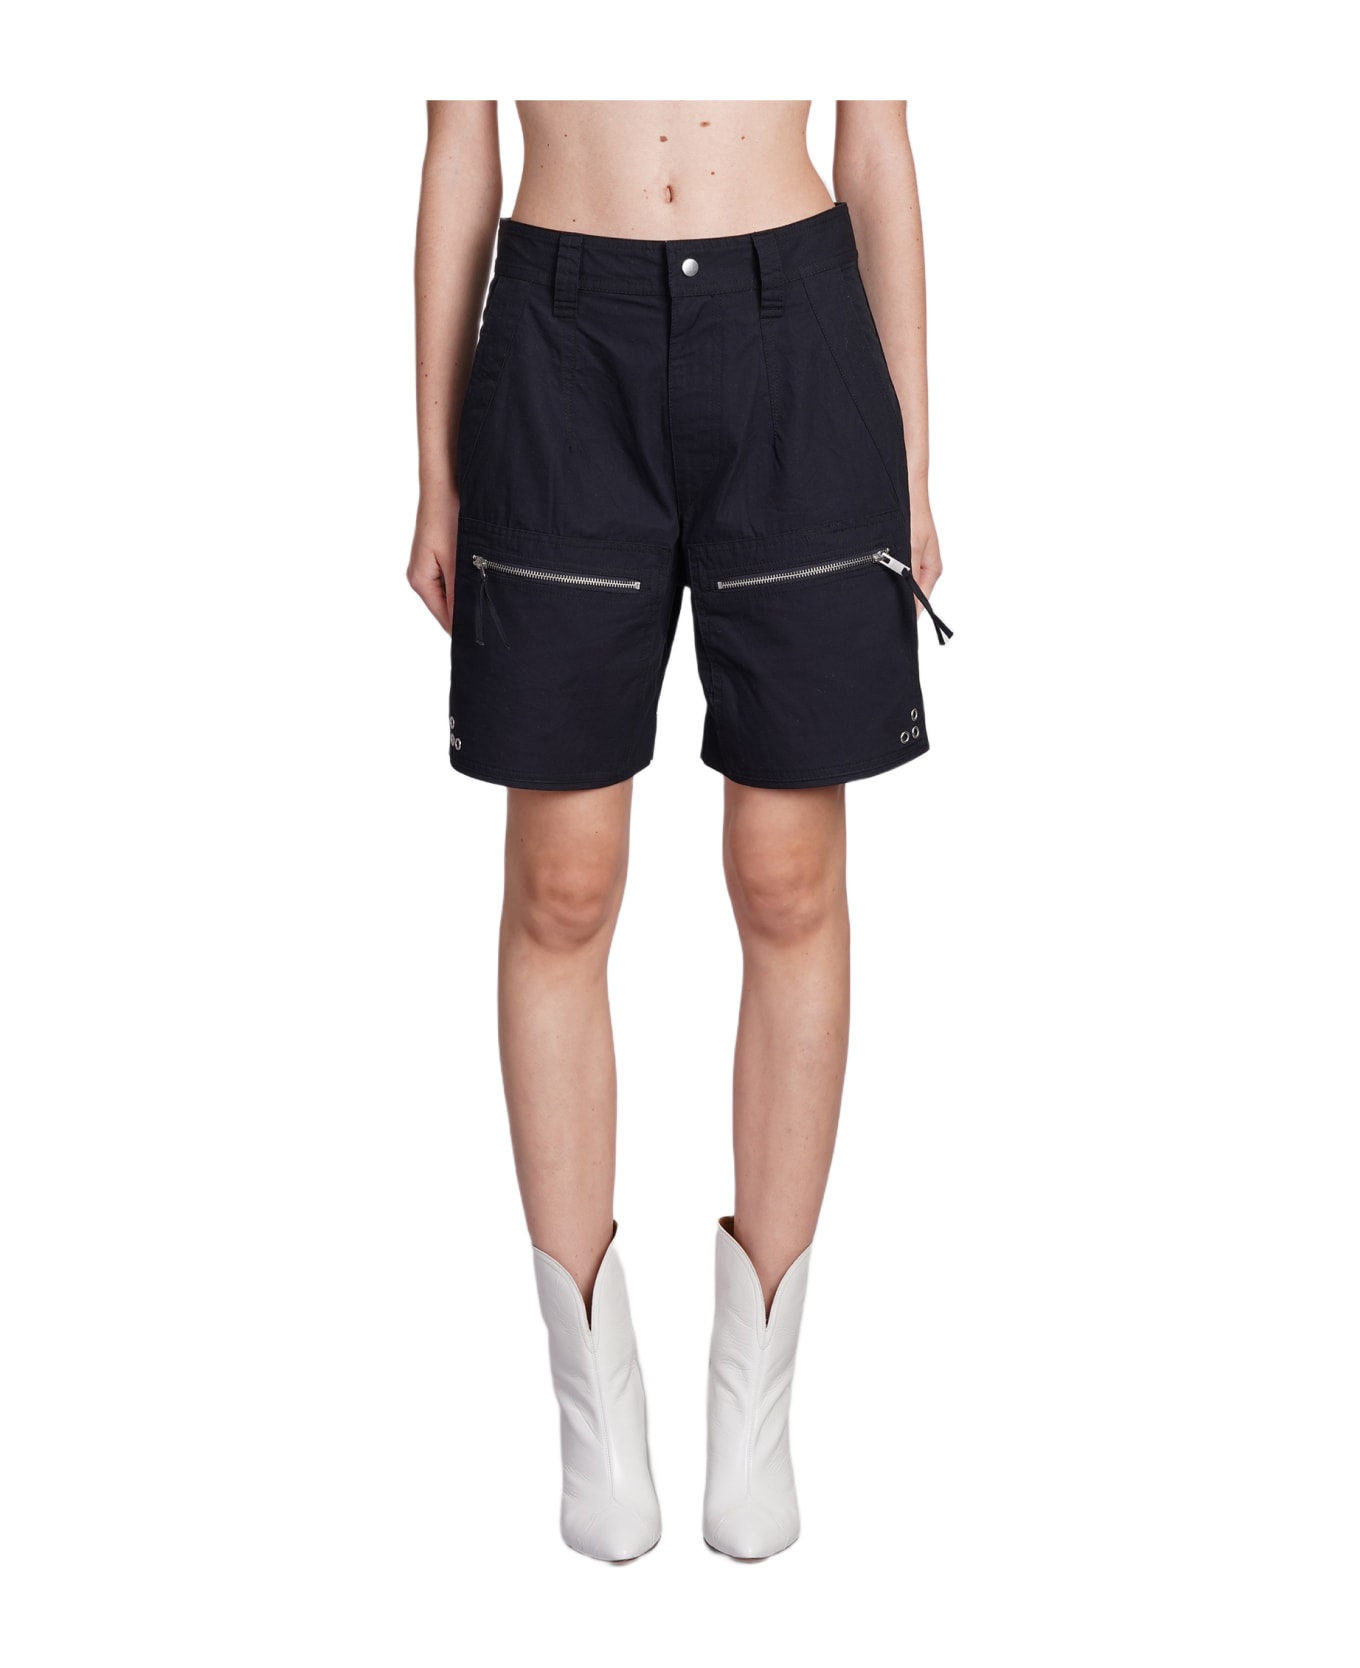 Marant Étoile Kynan High-waist Shorts - black ショートパンツ